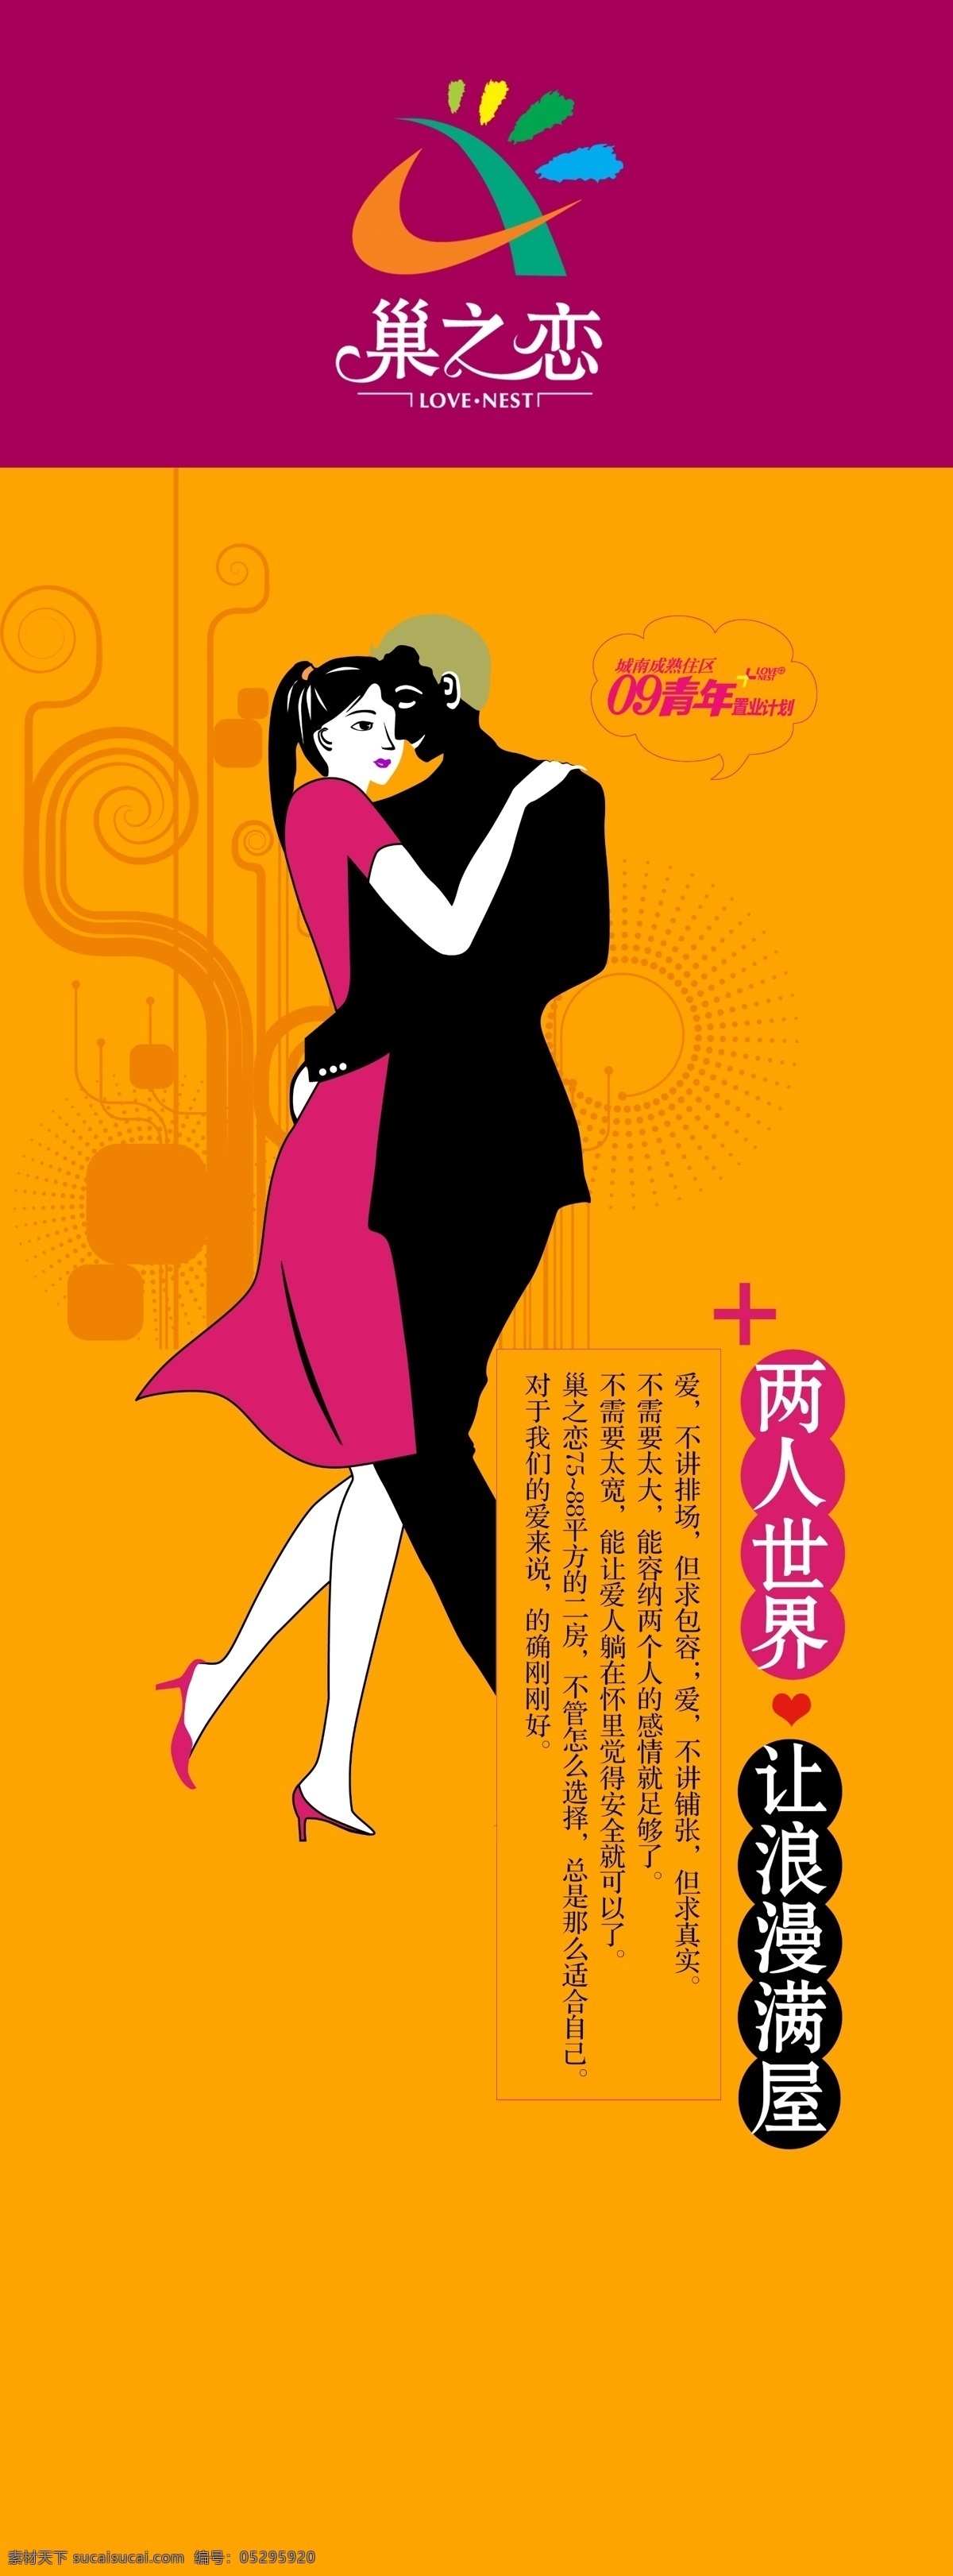 婚恋展架 展架 家居 婚恋 海报 宣传 展板模板 广告设计模板 源文件